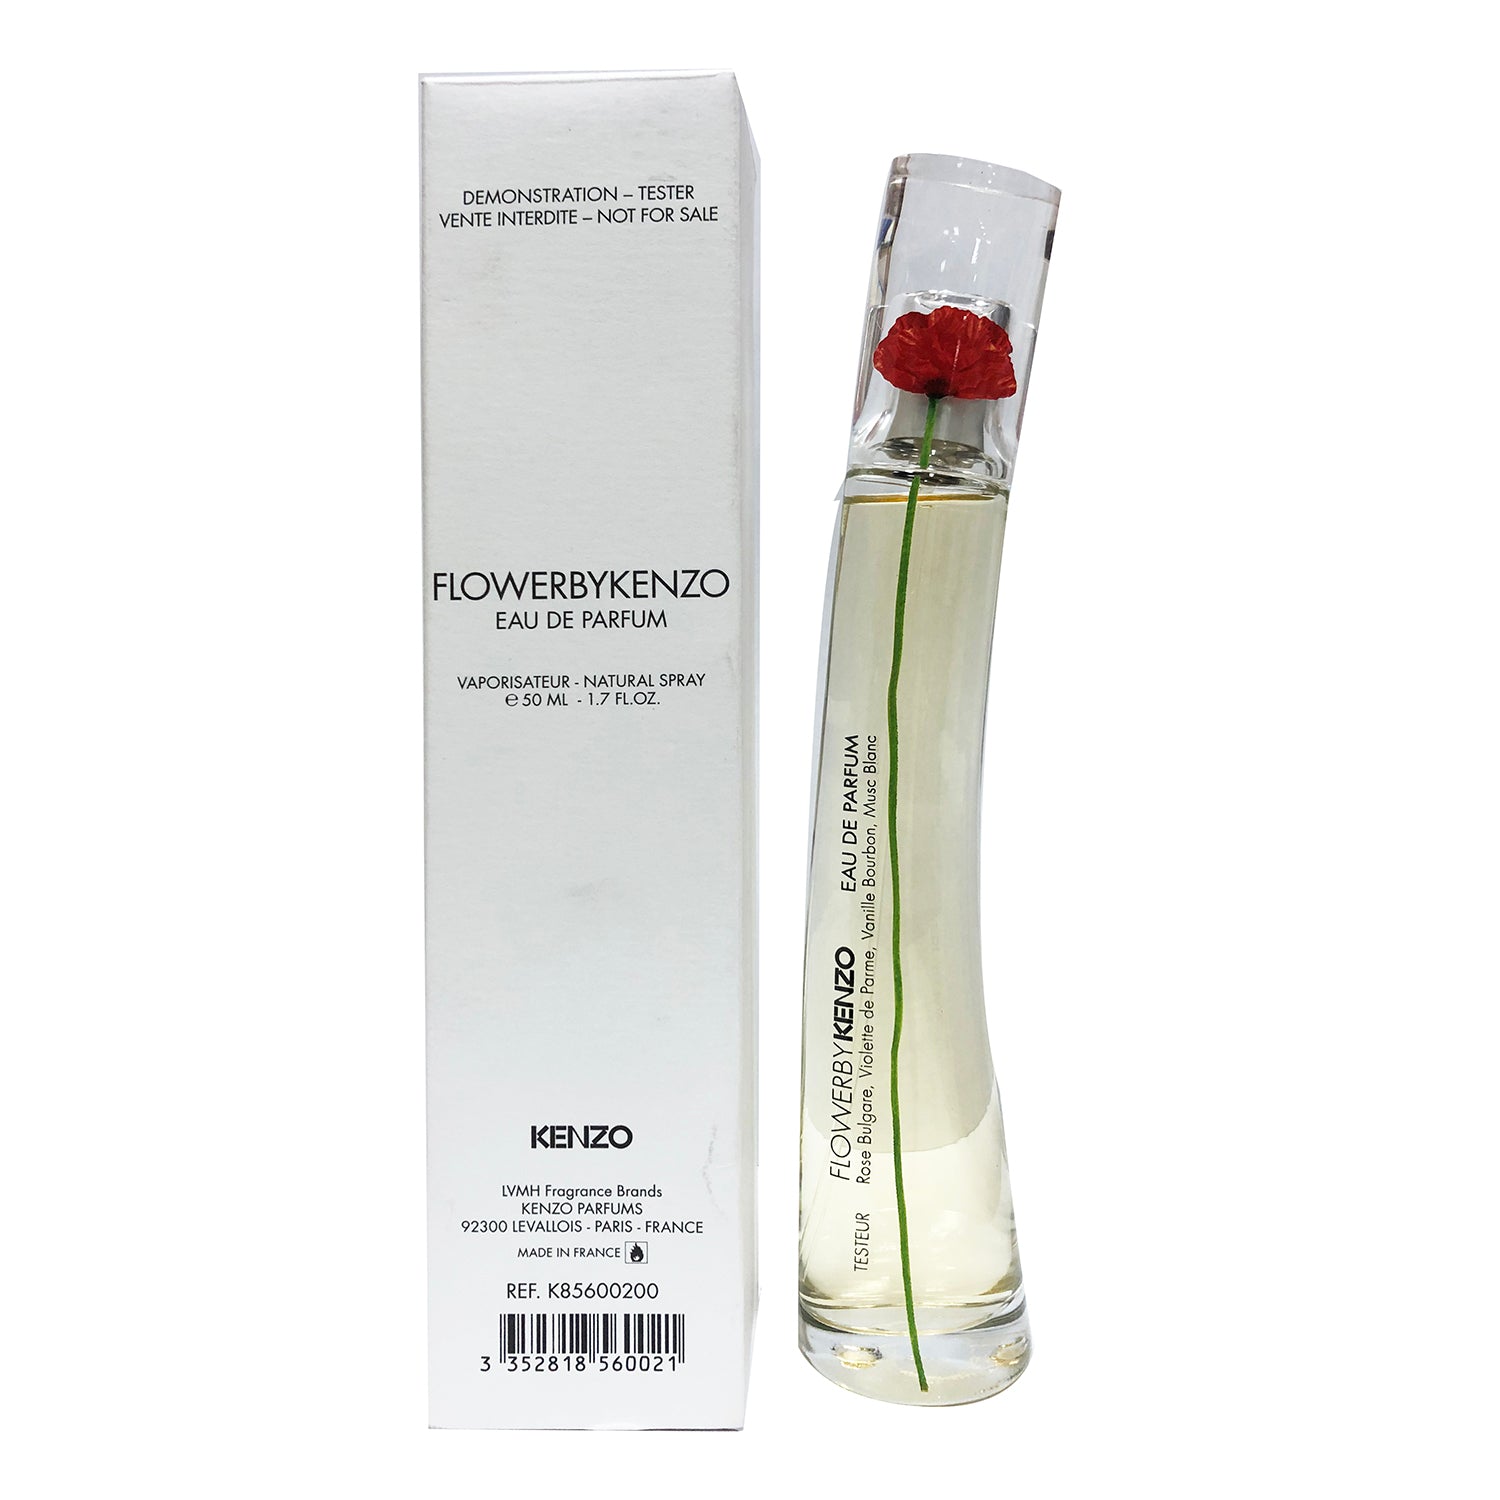 spray Virksomhedsbeskrivelse min Kenzo Flower by Kenzo EDP 1.7 oz 50 ml TESTER in white box Women – Rafaelos